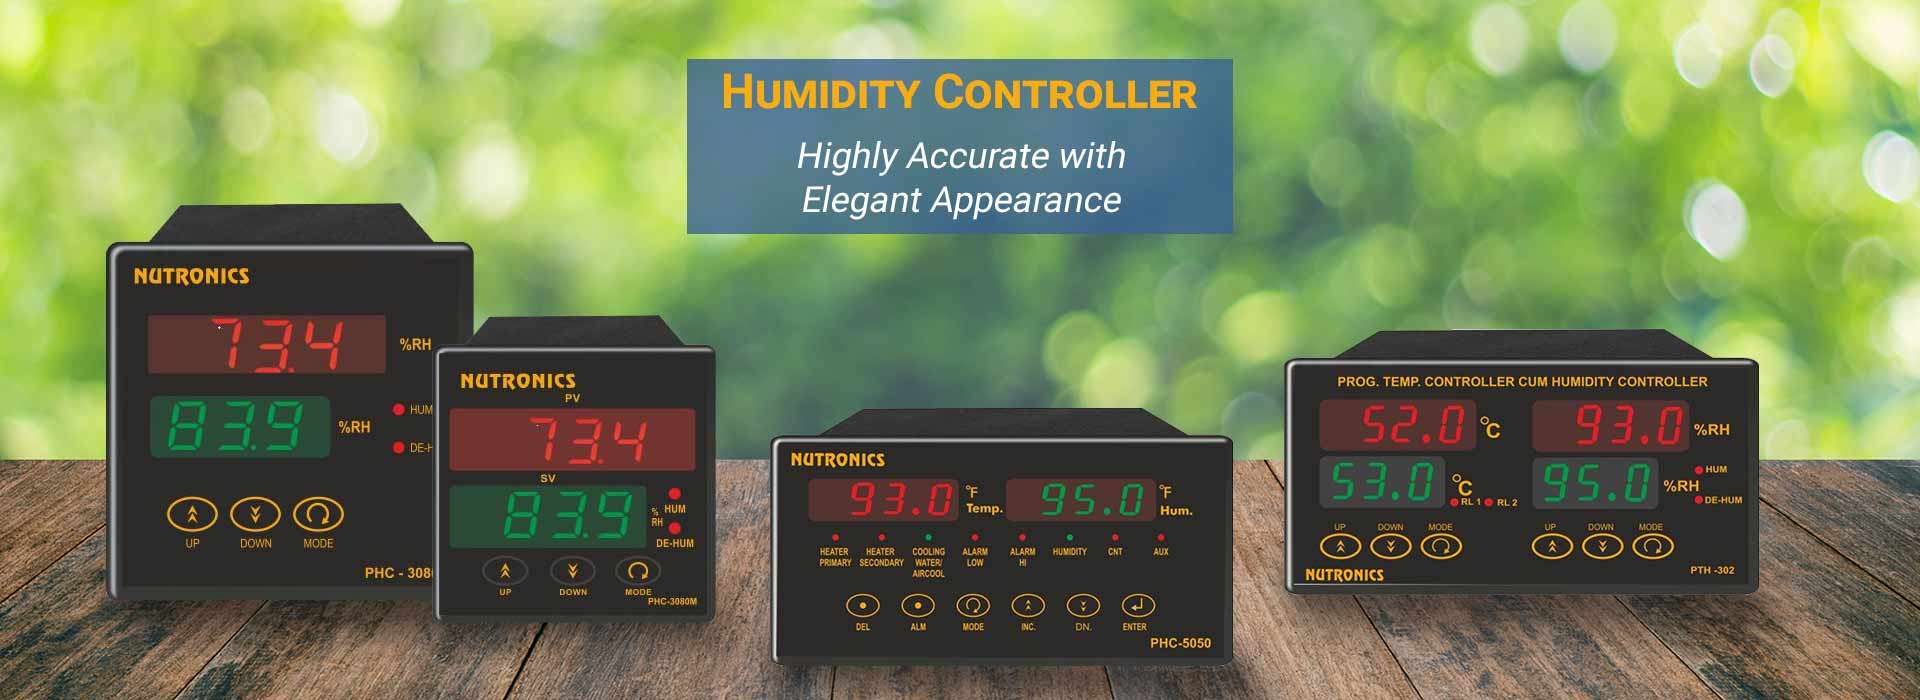  Humidity controller Manufacturers in Jamnagar